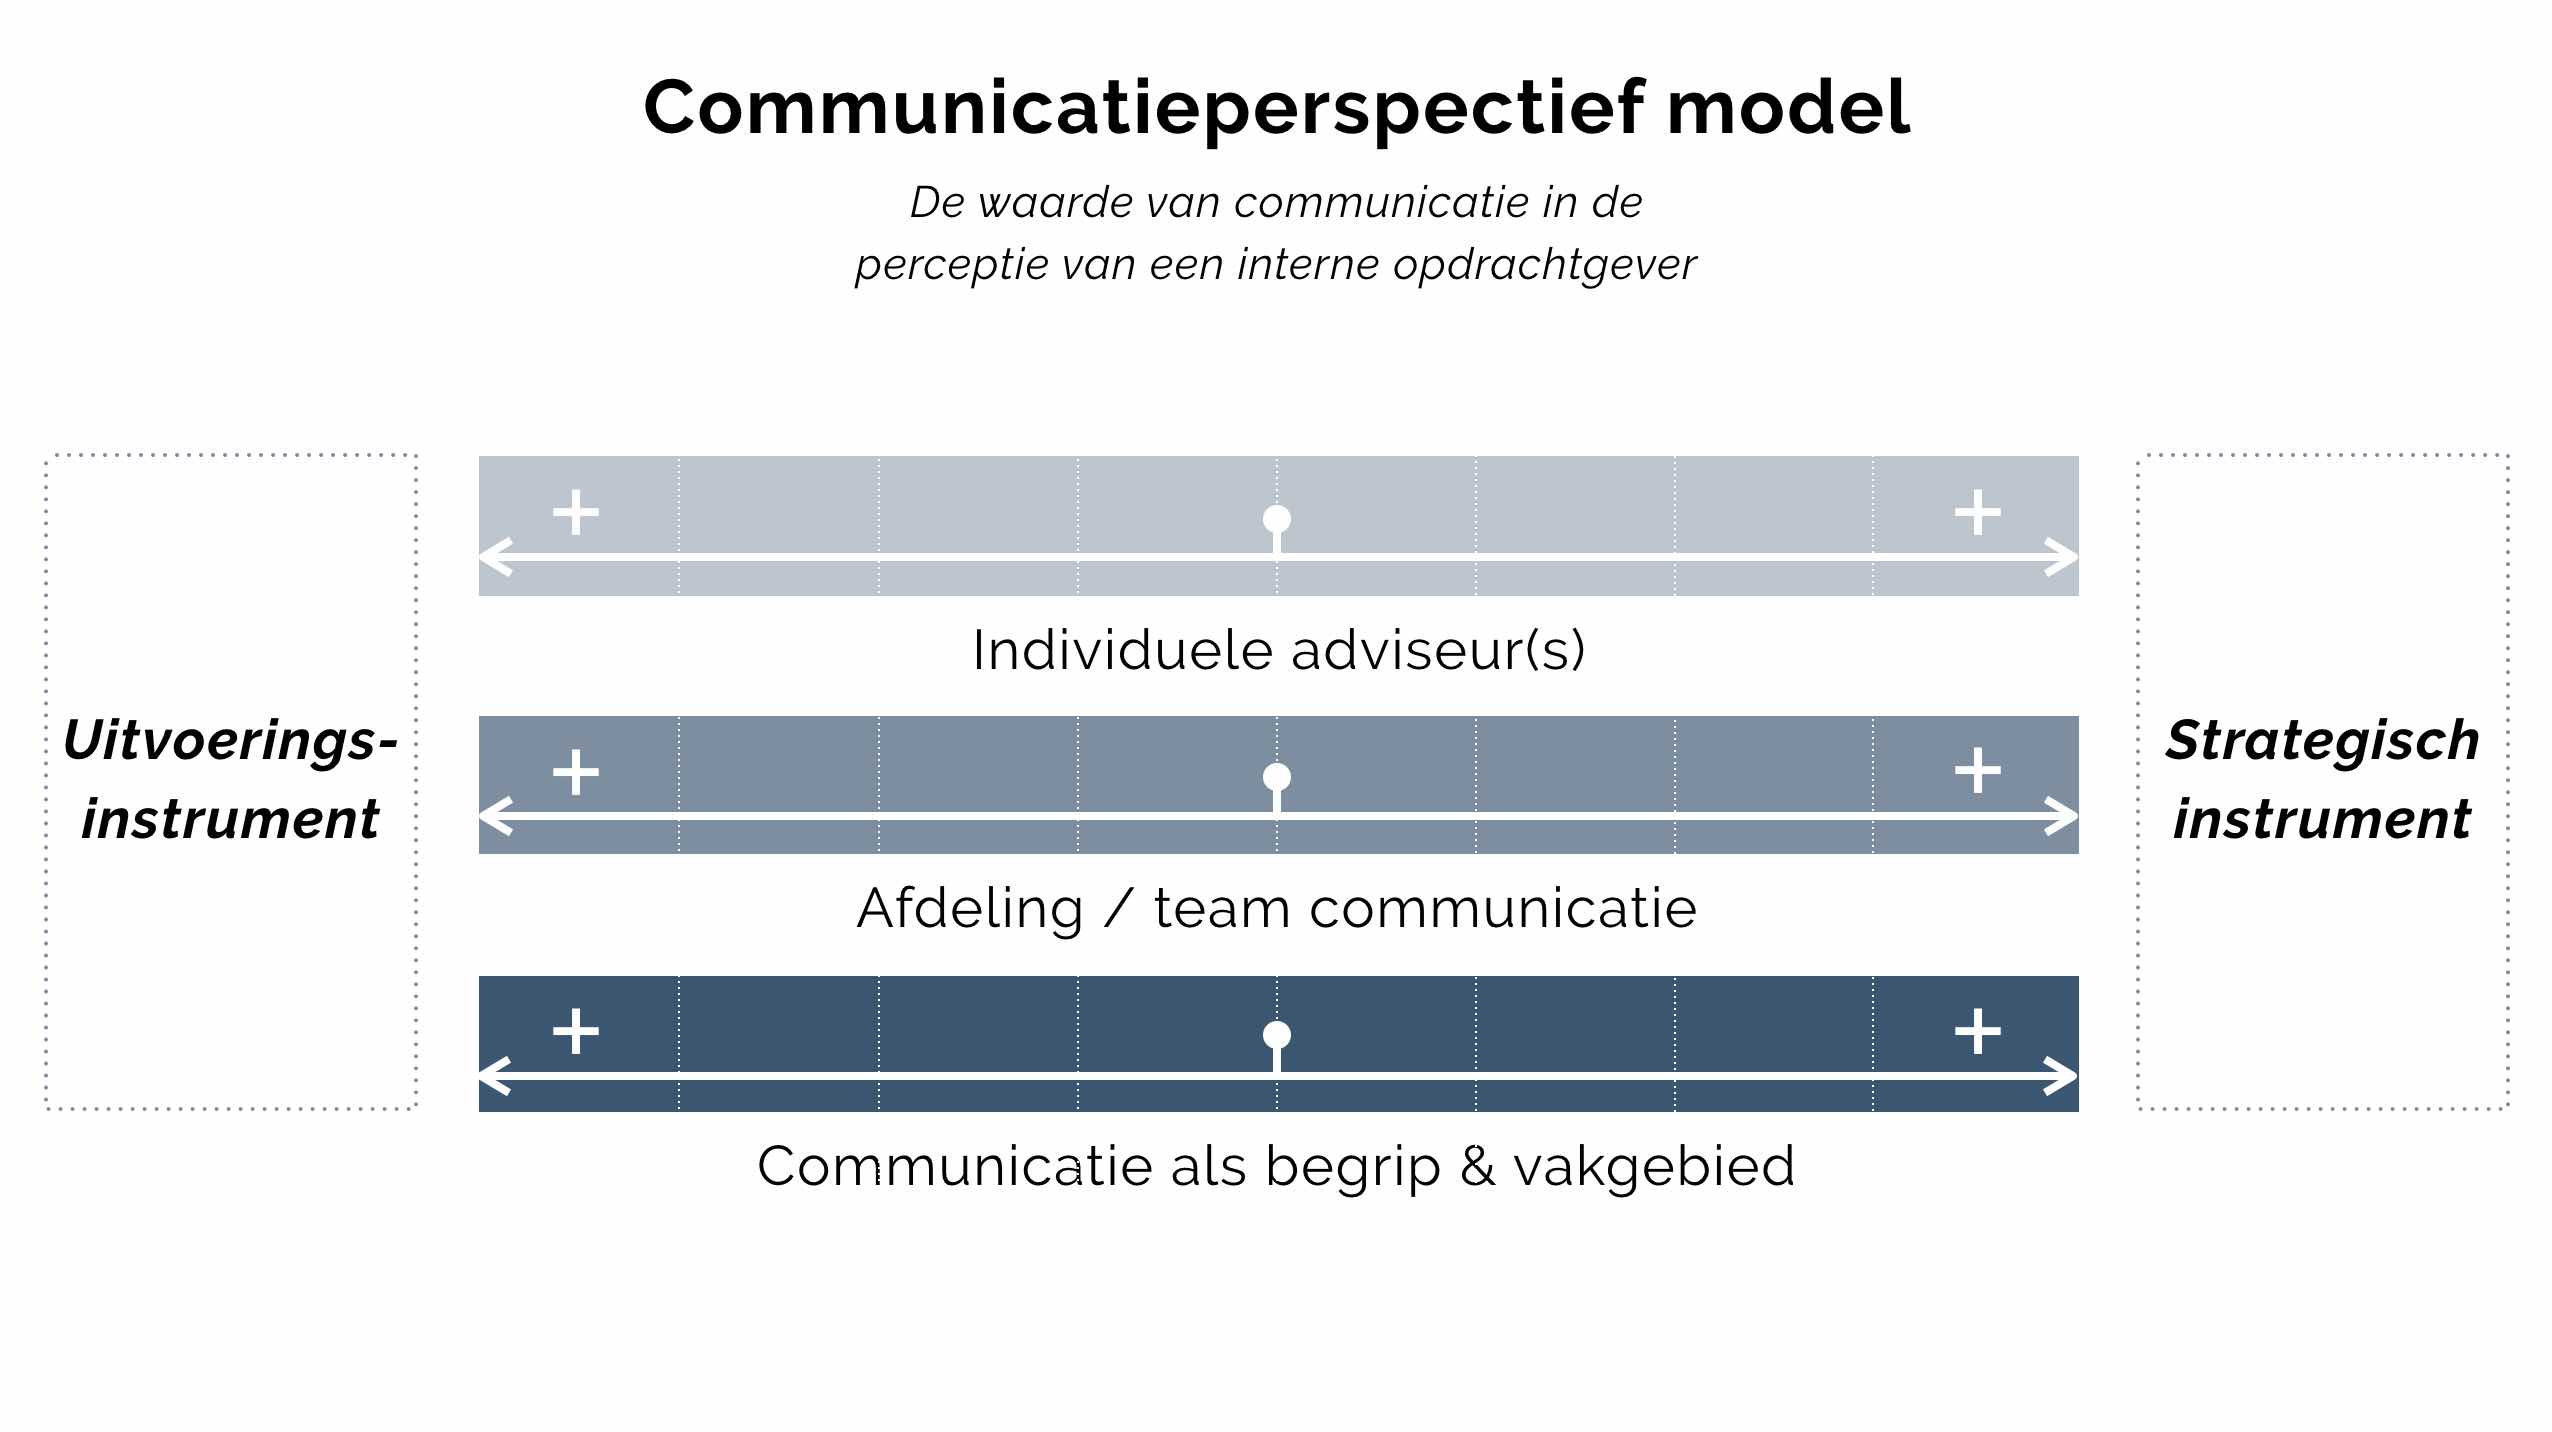 Communicatieperspectief model, hoe kijken interne opdrachtgevers naar communicatie als begrip, de afdeling en de adviseur